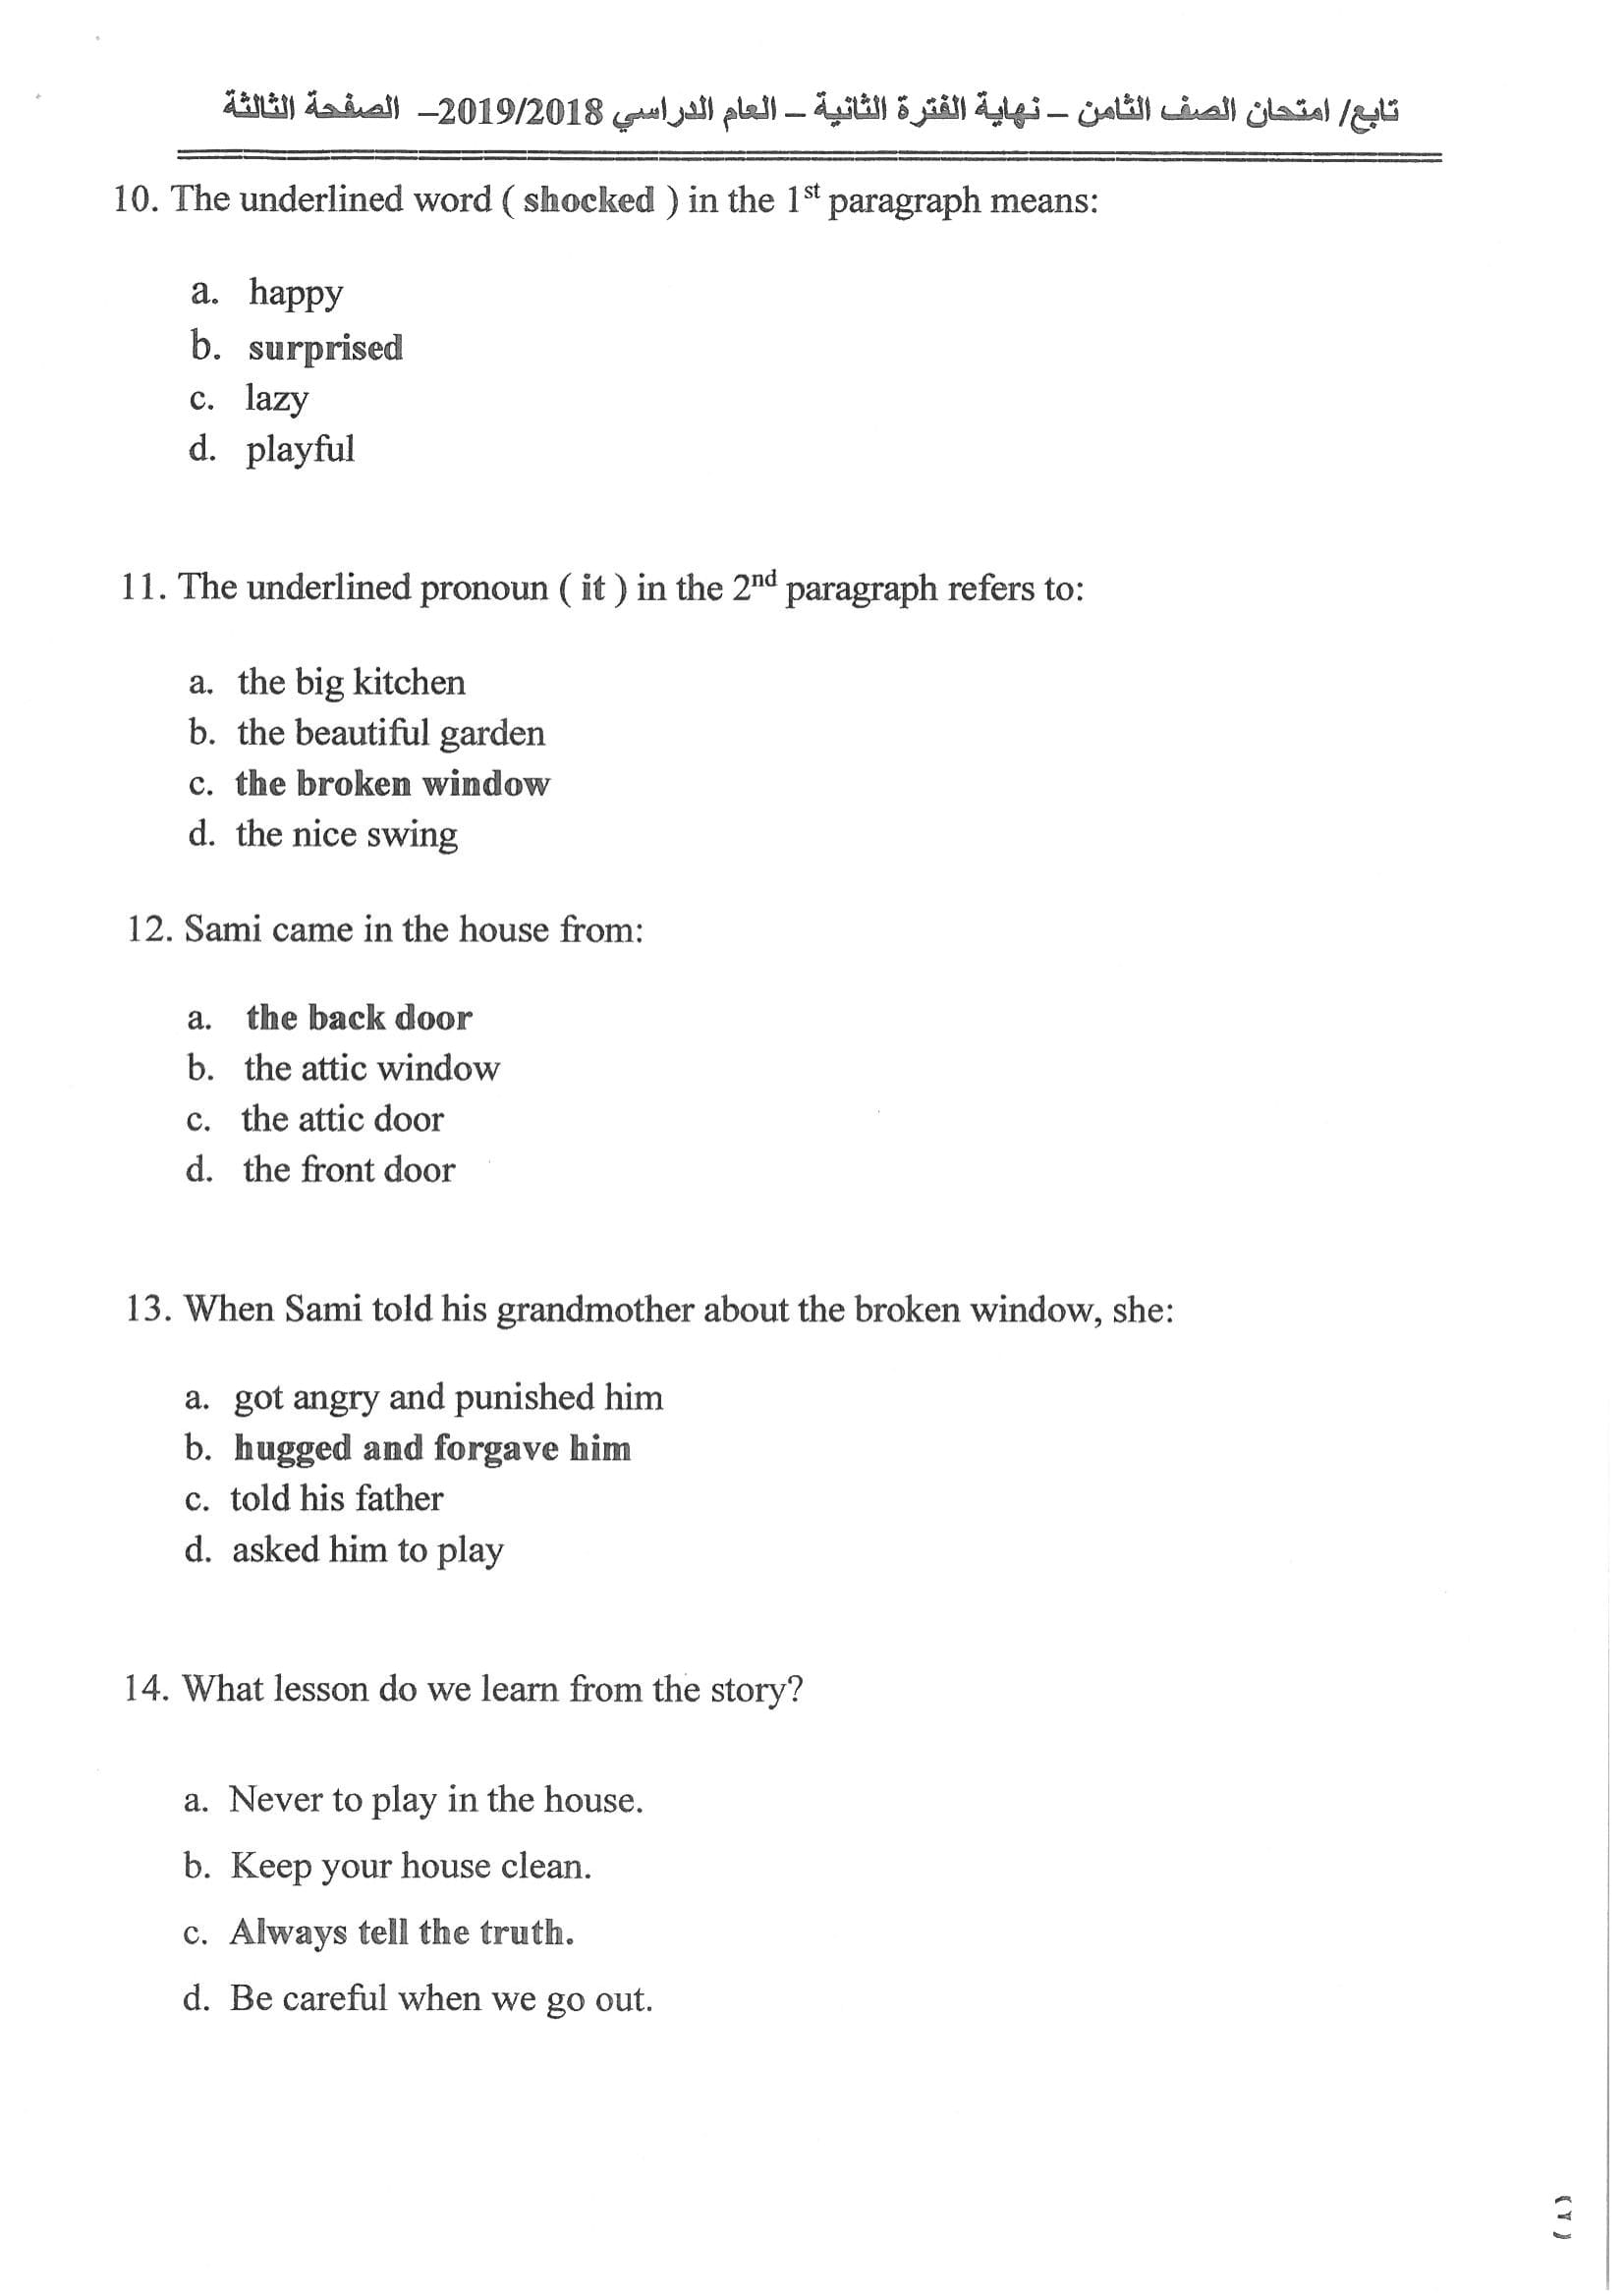 نموذج اجابة اختبار مادة اللغة الإنجليزية الثامن الفصل الثاني